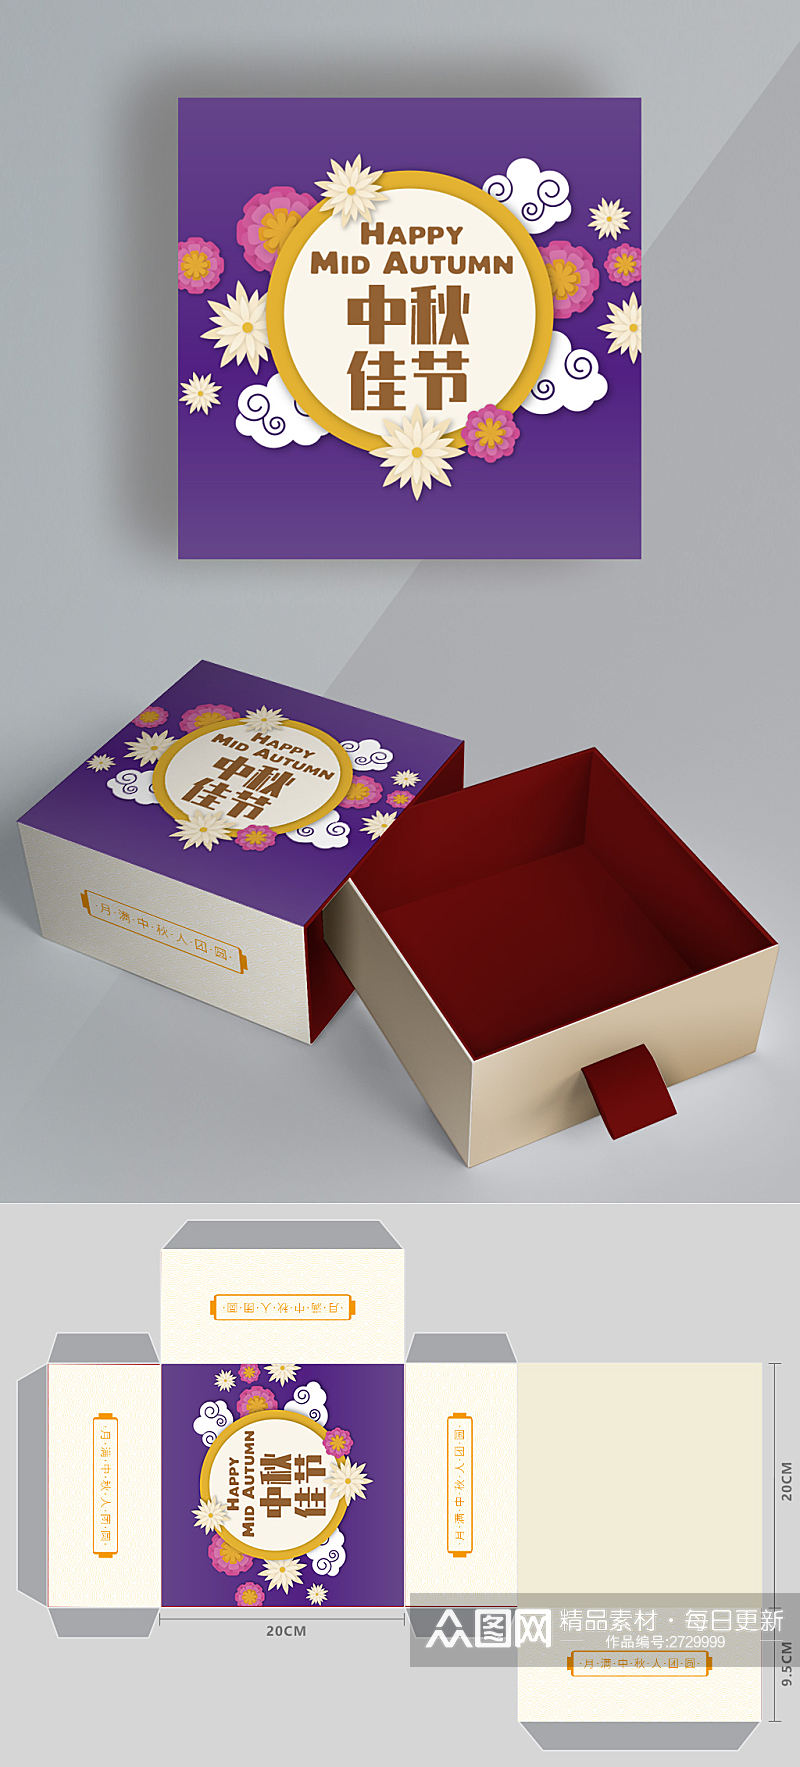 中秋节矢量剪纸风方形月饼礼盒包装设计素材